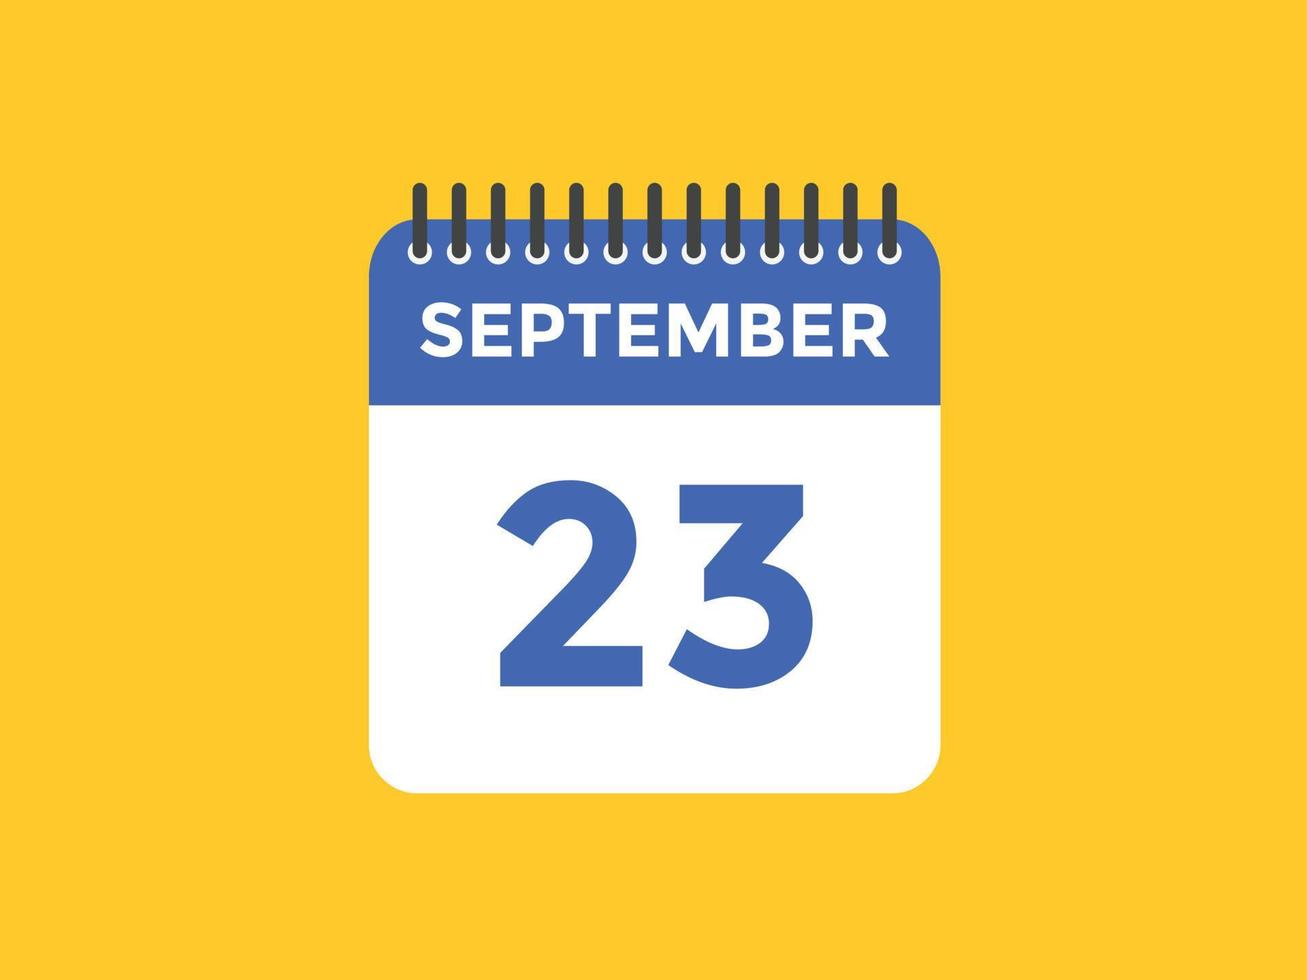 Recordatorio del calendario del 23 de septiembre. Plantilla de icono de calendario diario del 23 de septiembre. plantilla de diseño de icono de calendario 23 de septiembre. ilustración vectorial vector